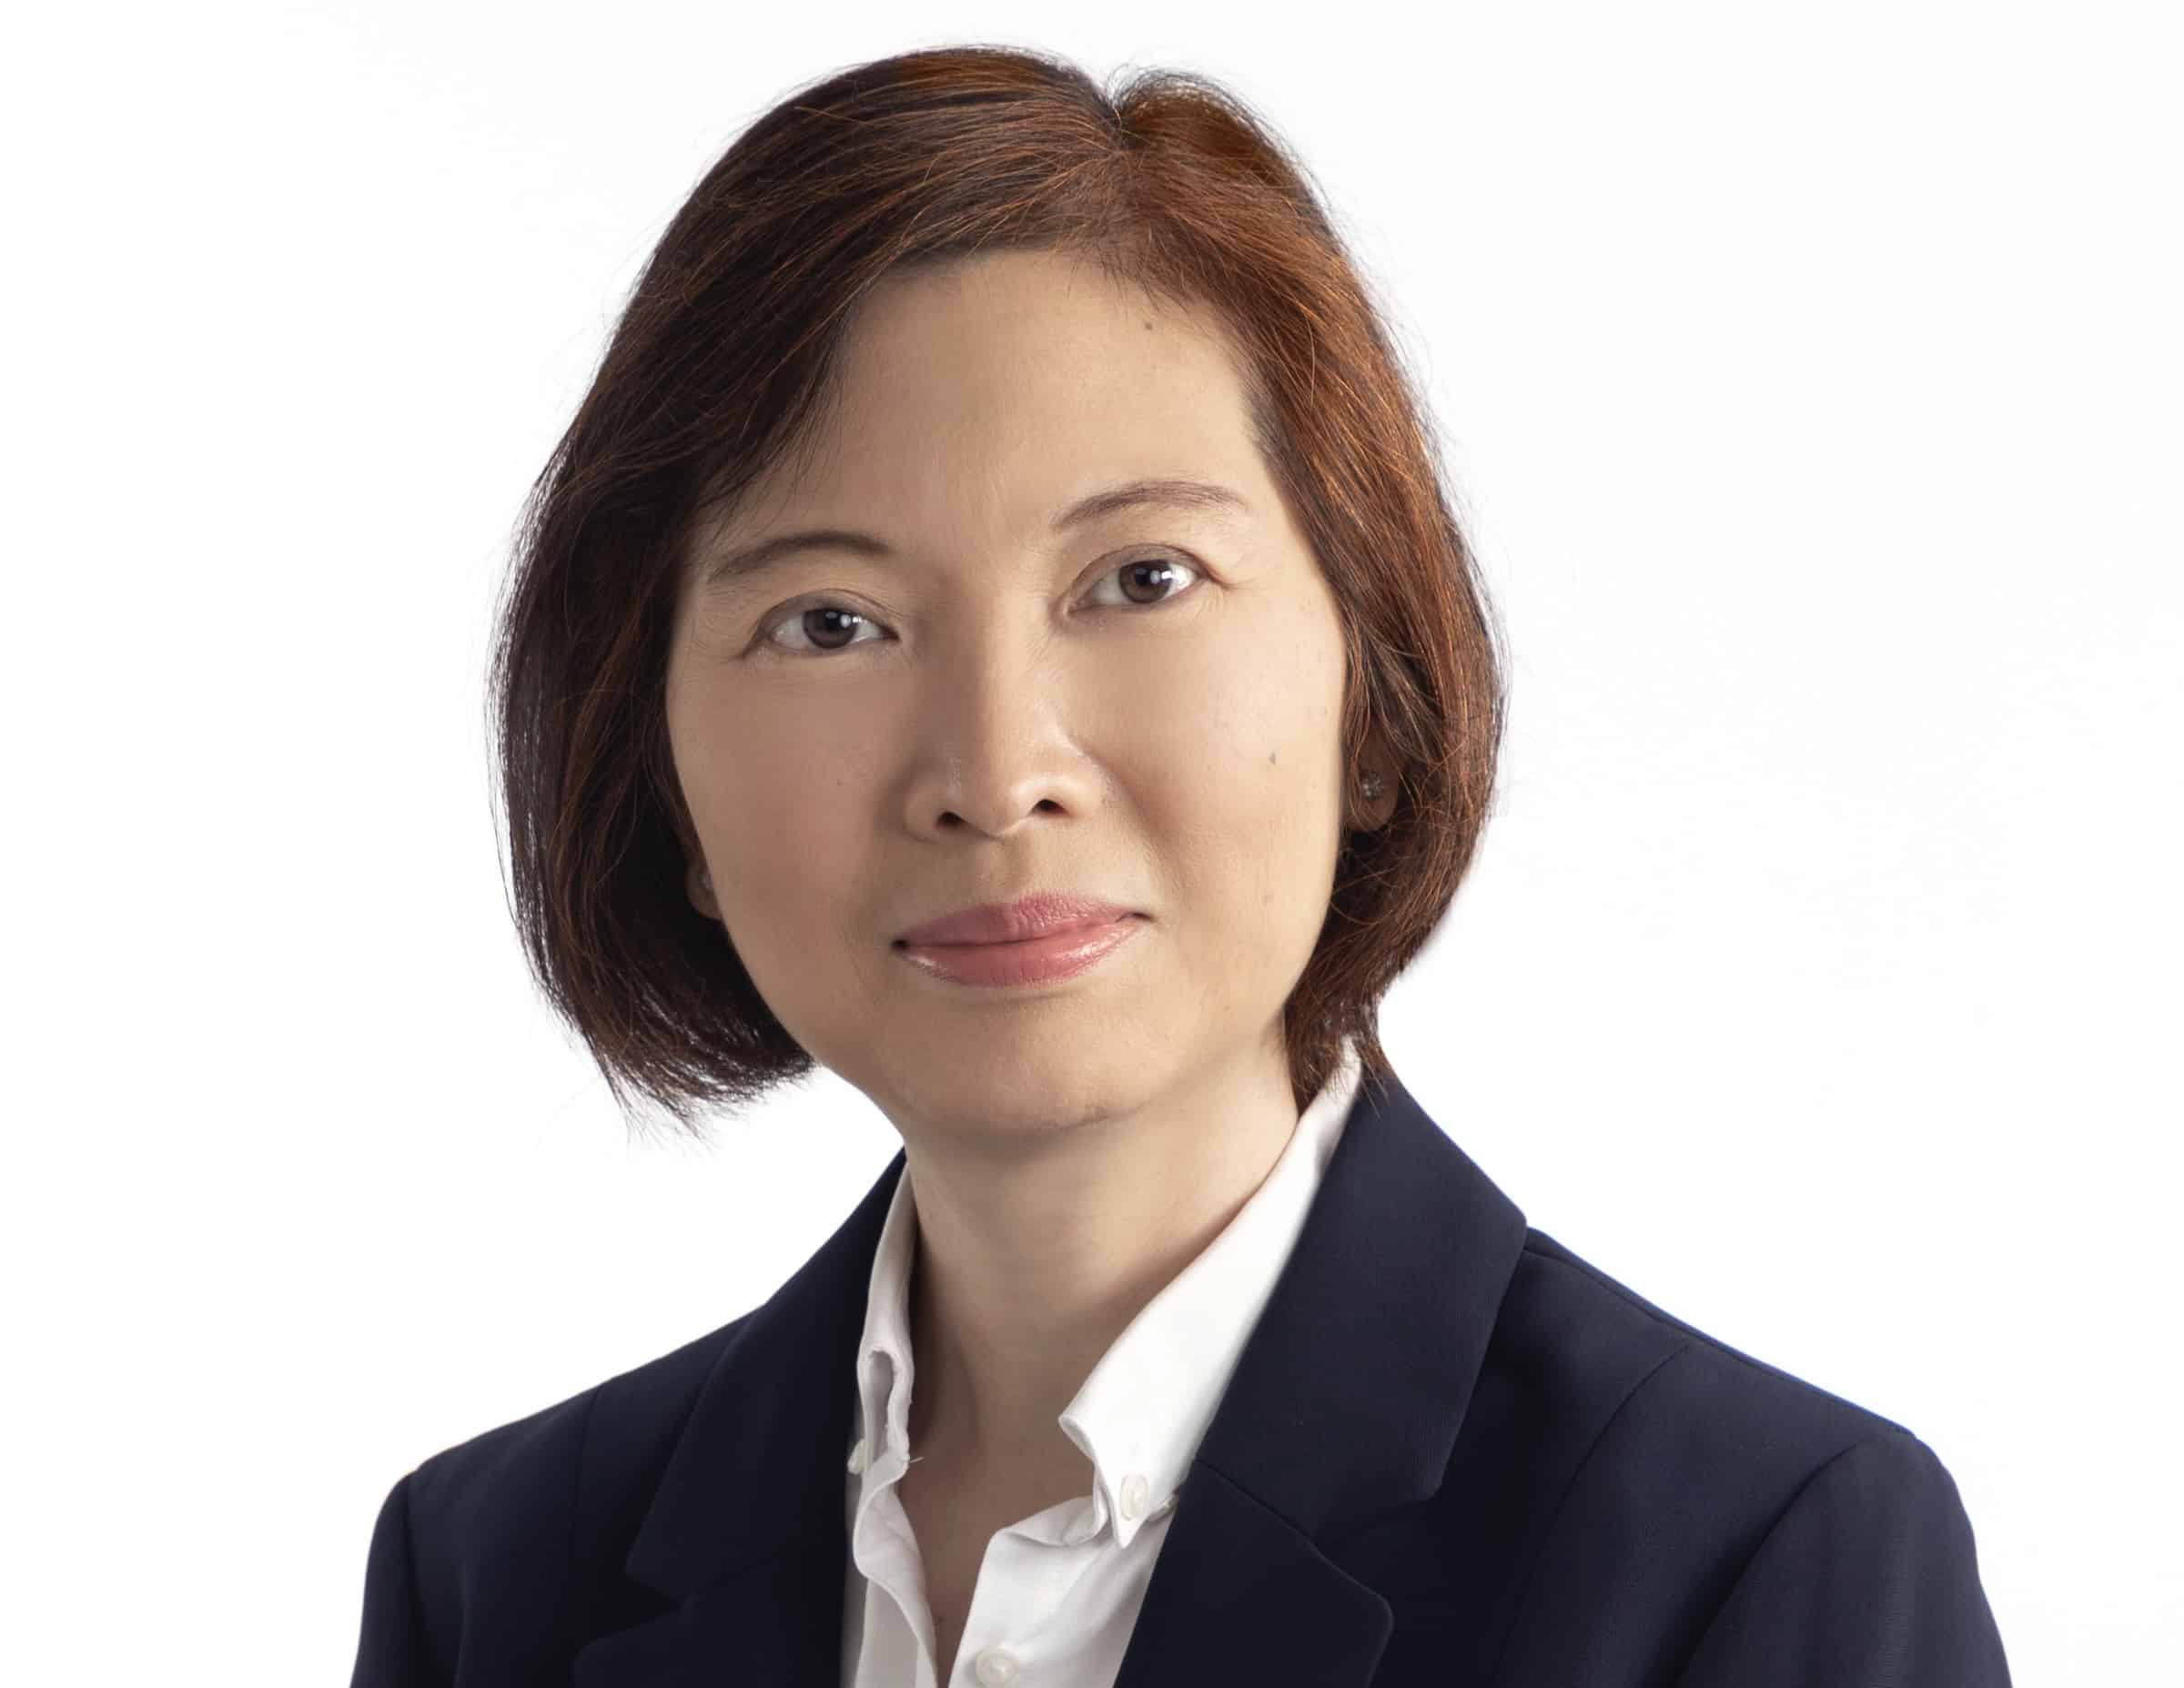 HDI: Ernennung von Lisa Leow zum Underwriter mit sofortiger Wirkung im asiatischen Markt für Accident & Health.